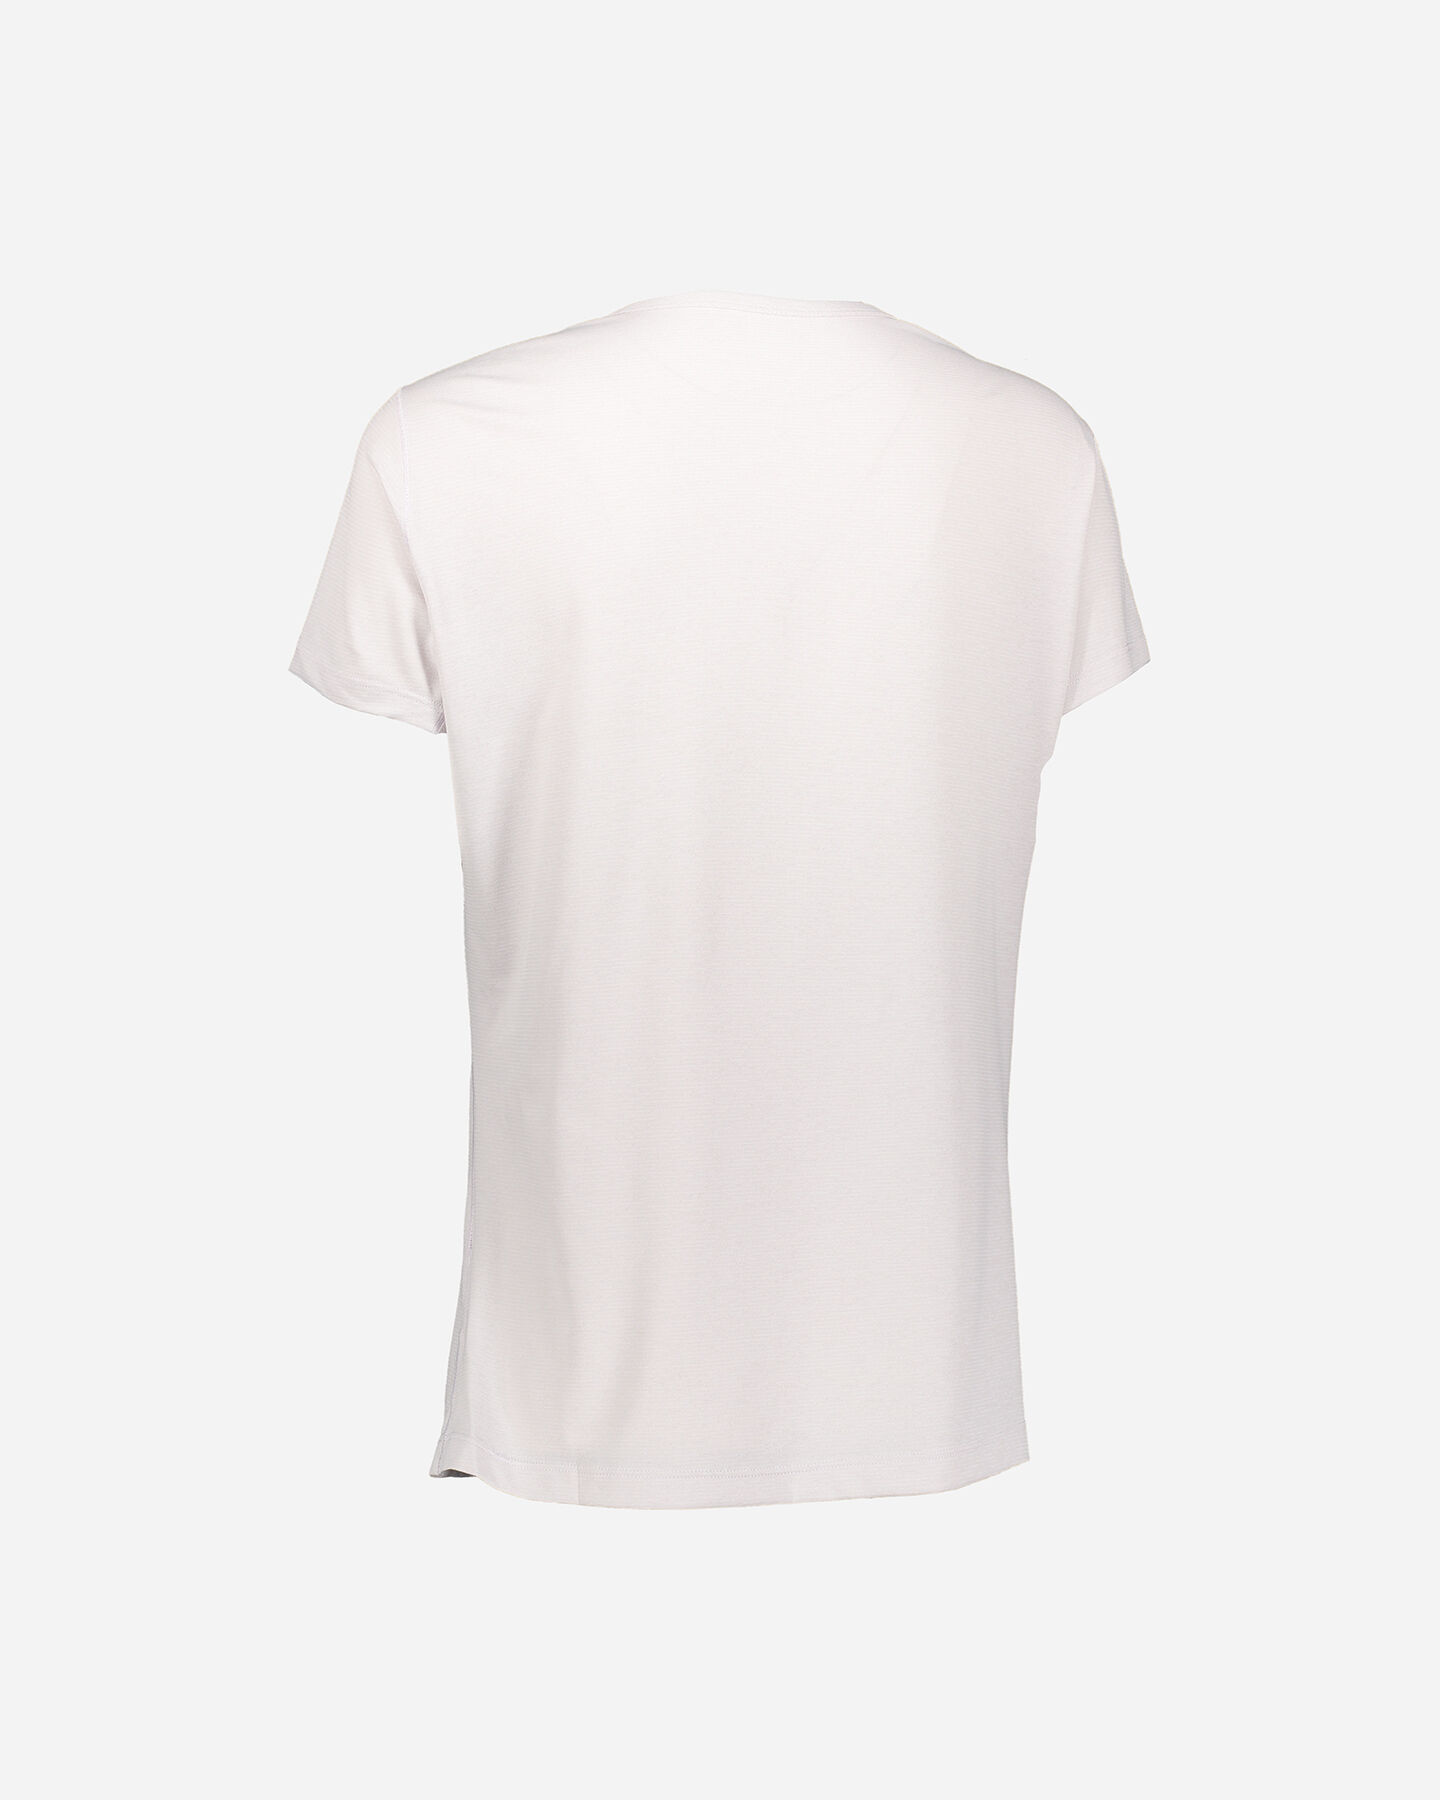  T-Shirt ARC'TERYX QUADRA CREW W S4089772|1|XS scatto 1